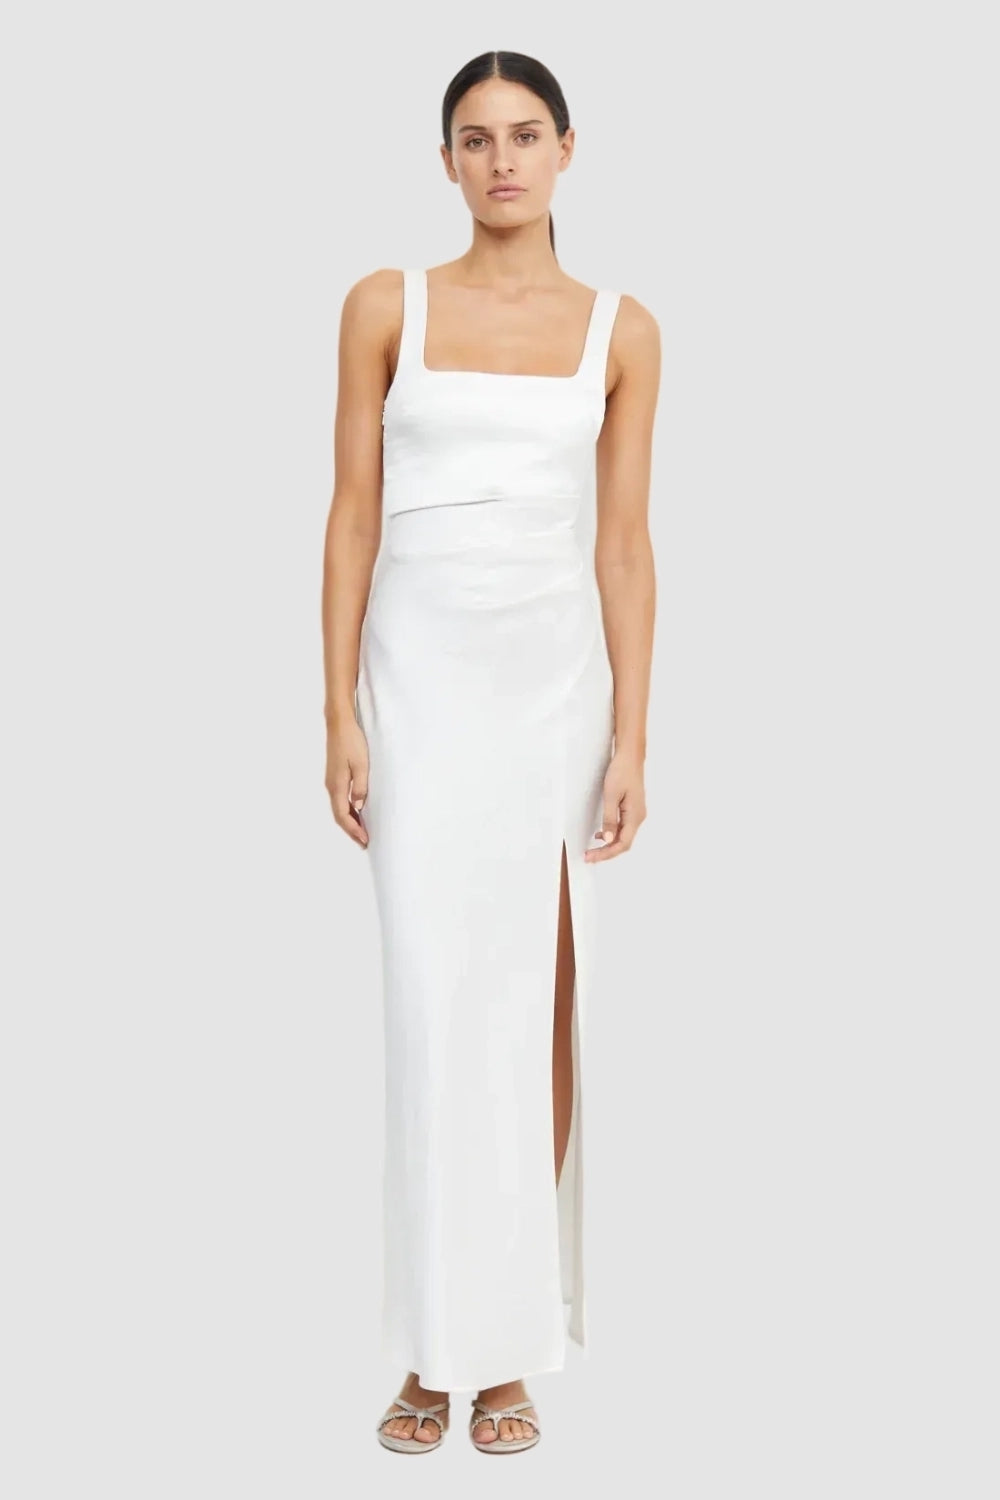 Savannah White Dress